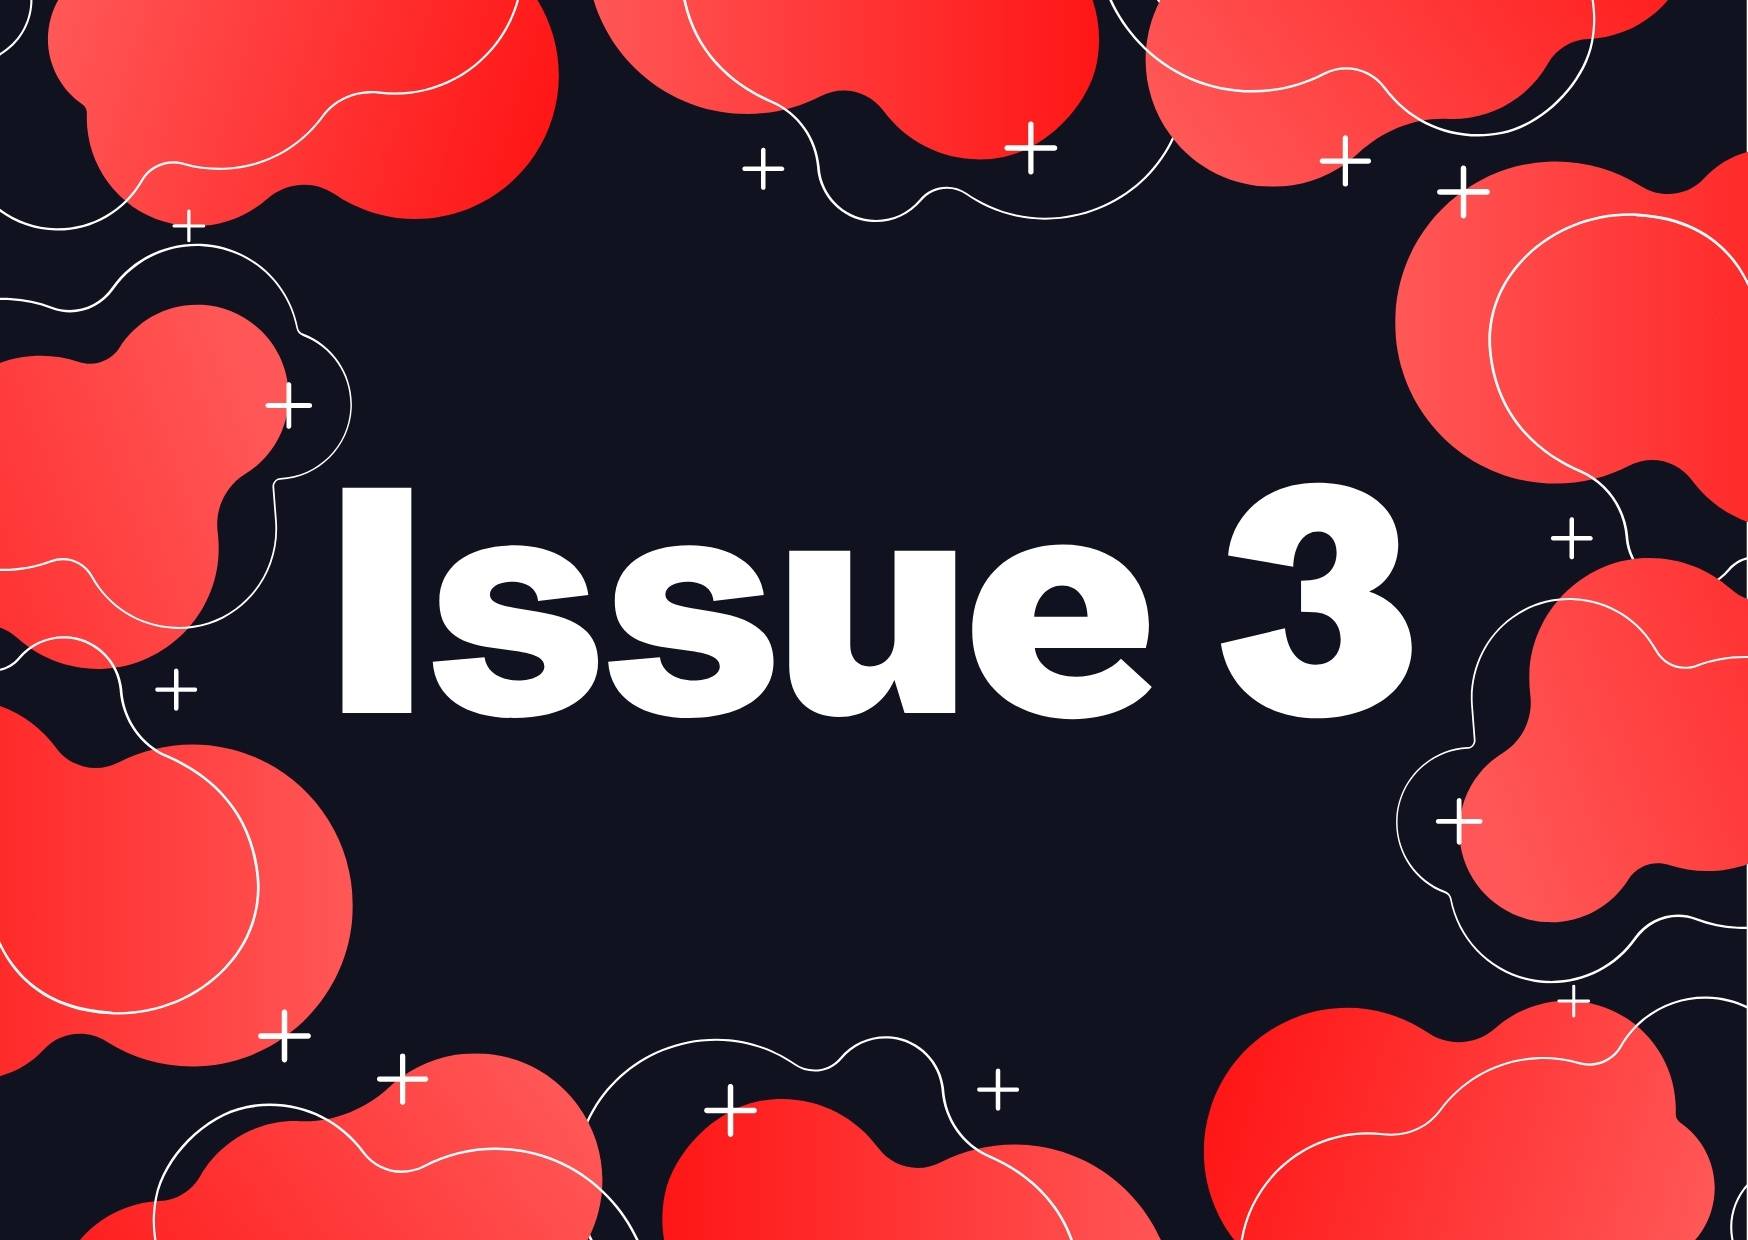 Volume 1: ISSUE 3